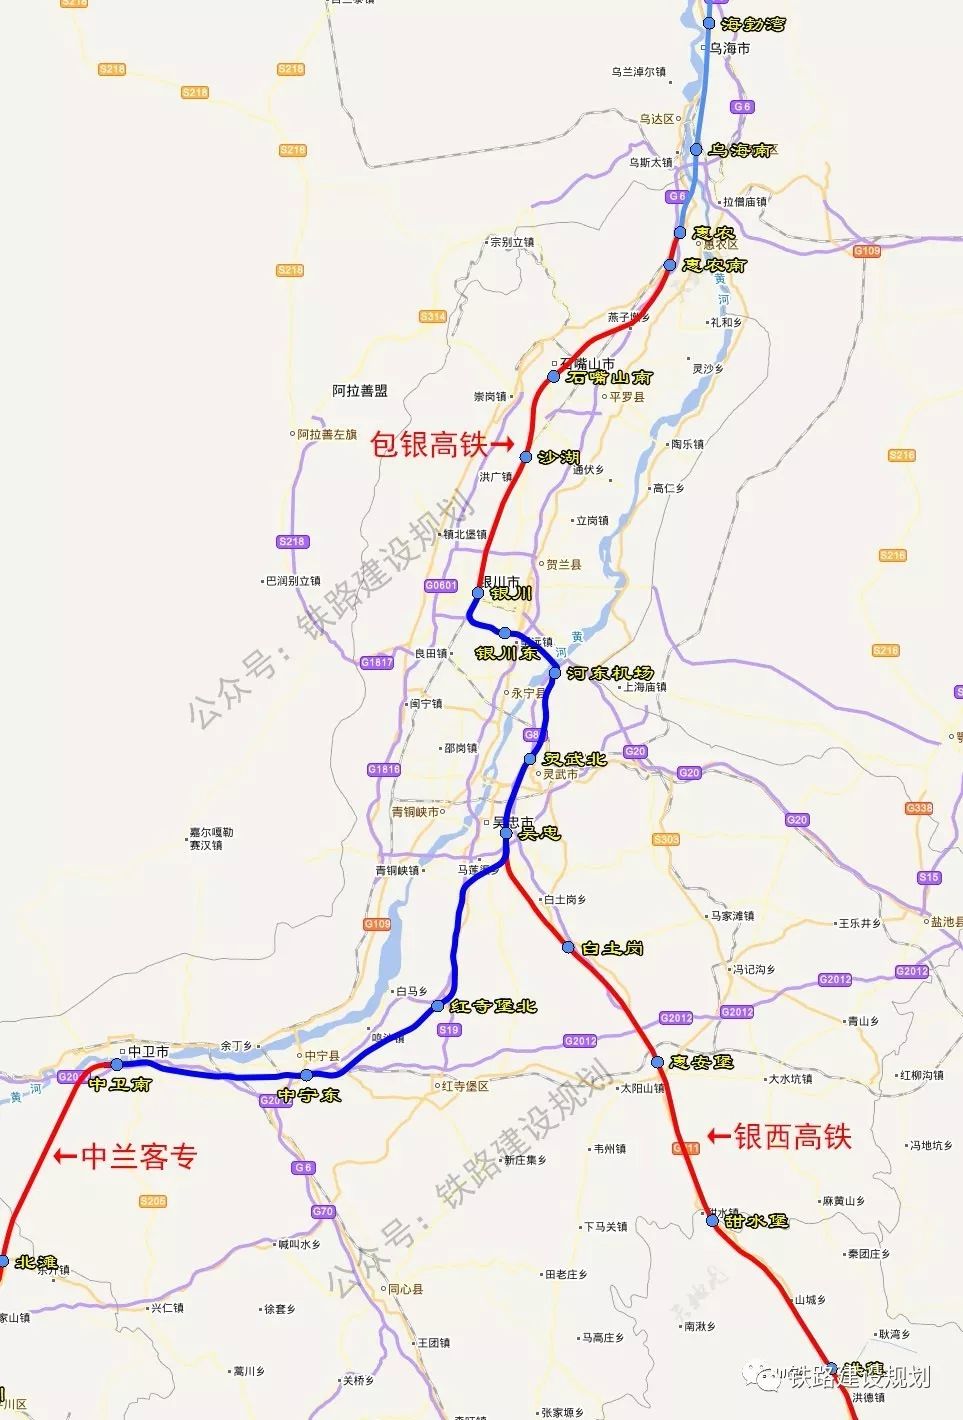 宁夏首条高铁:银川至中卫客专即将联调联试,前有望开通